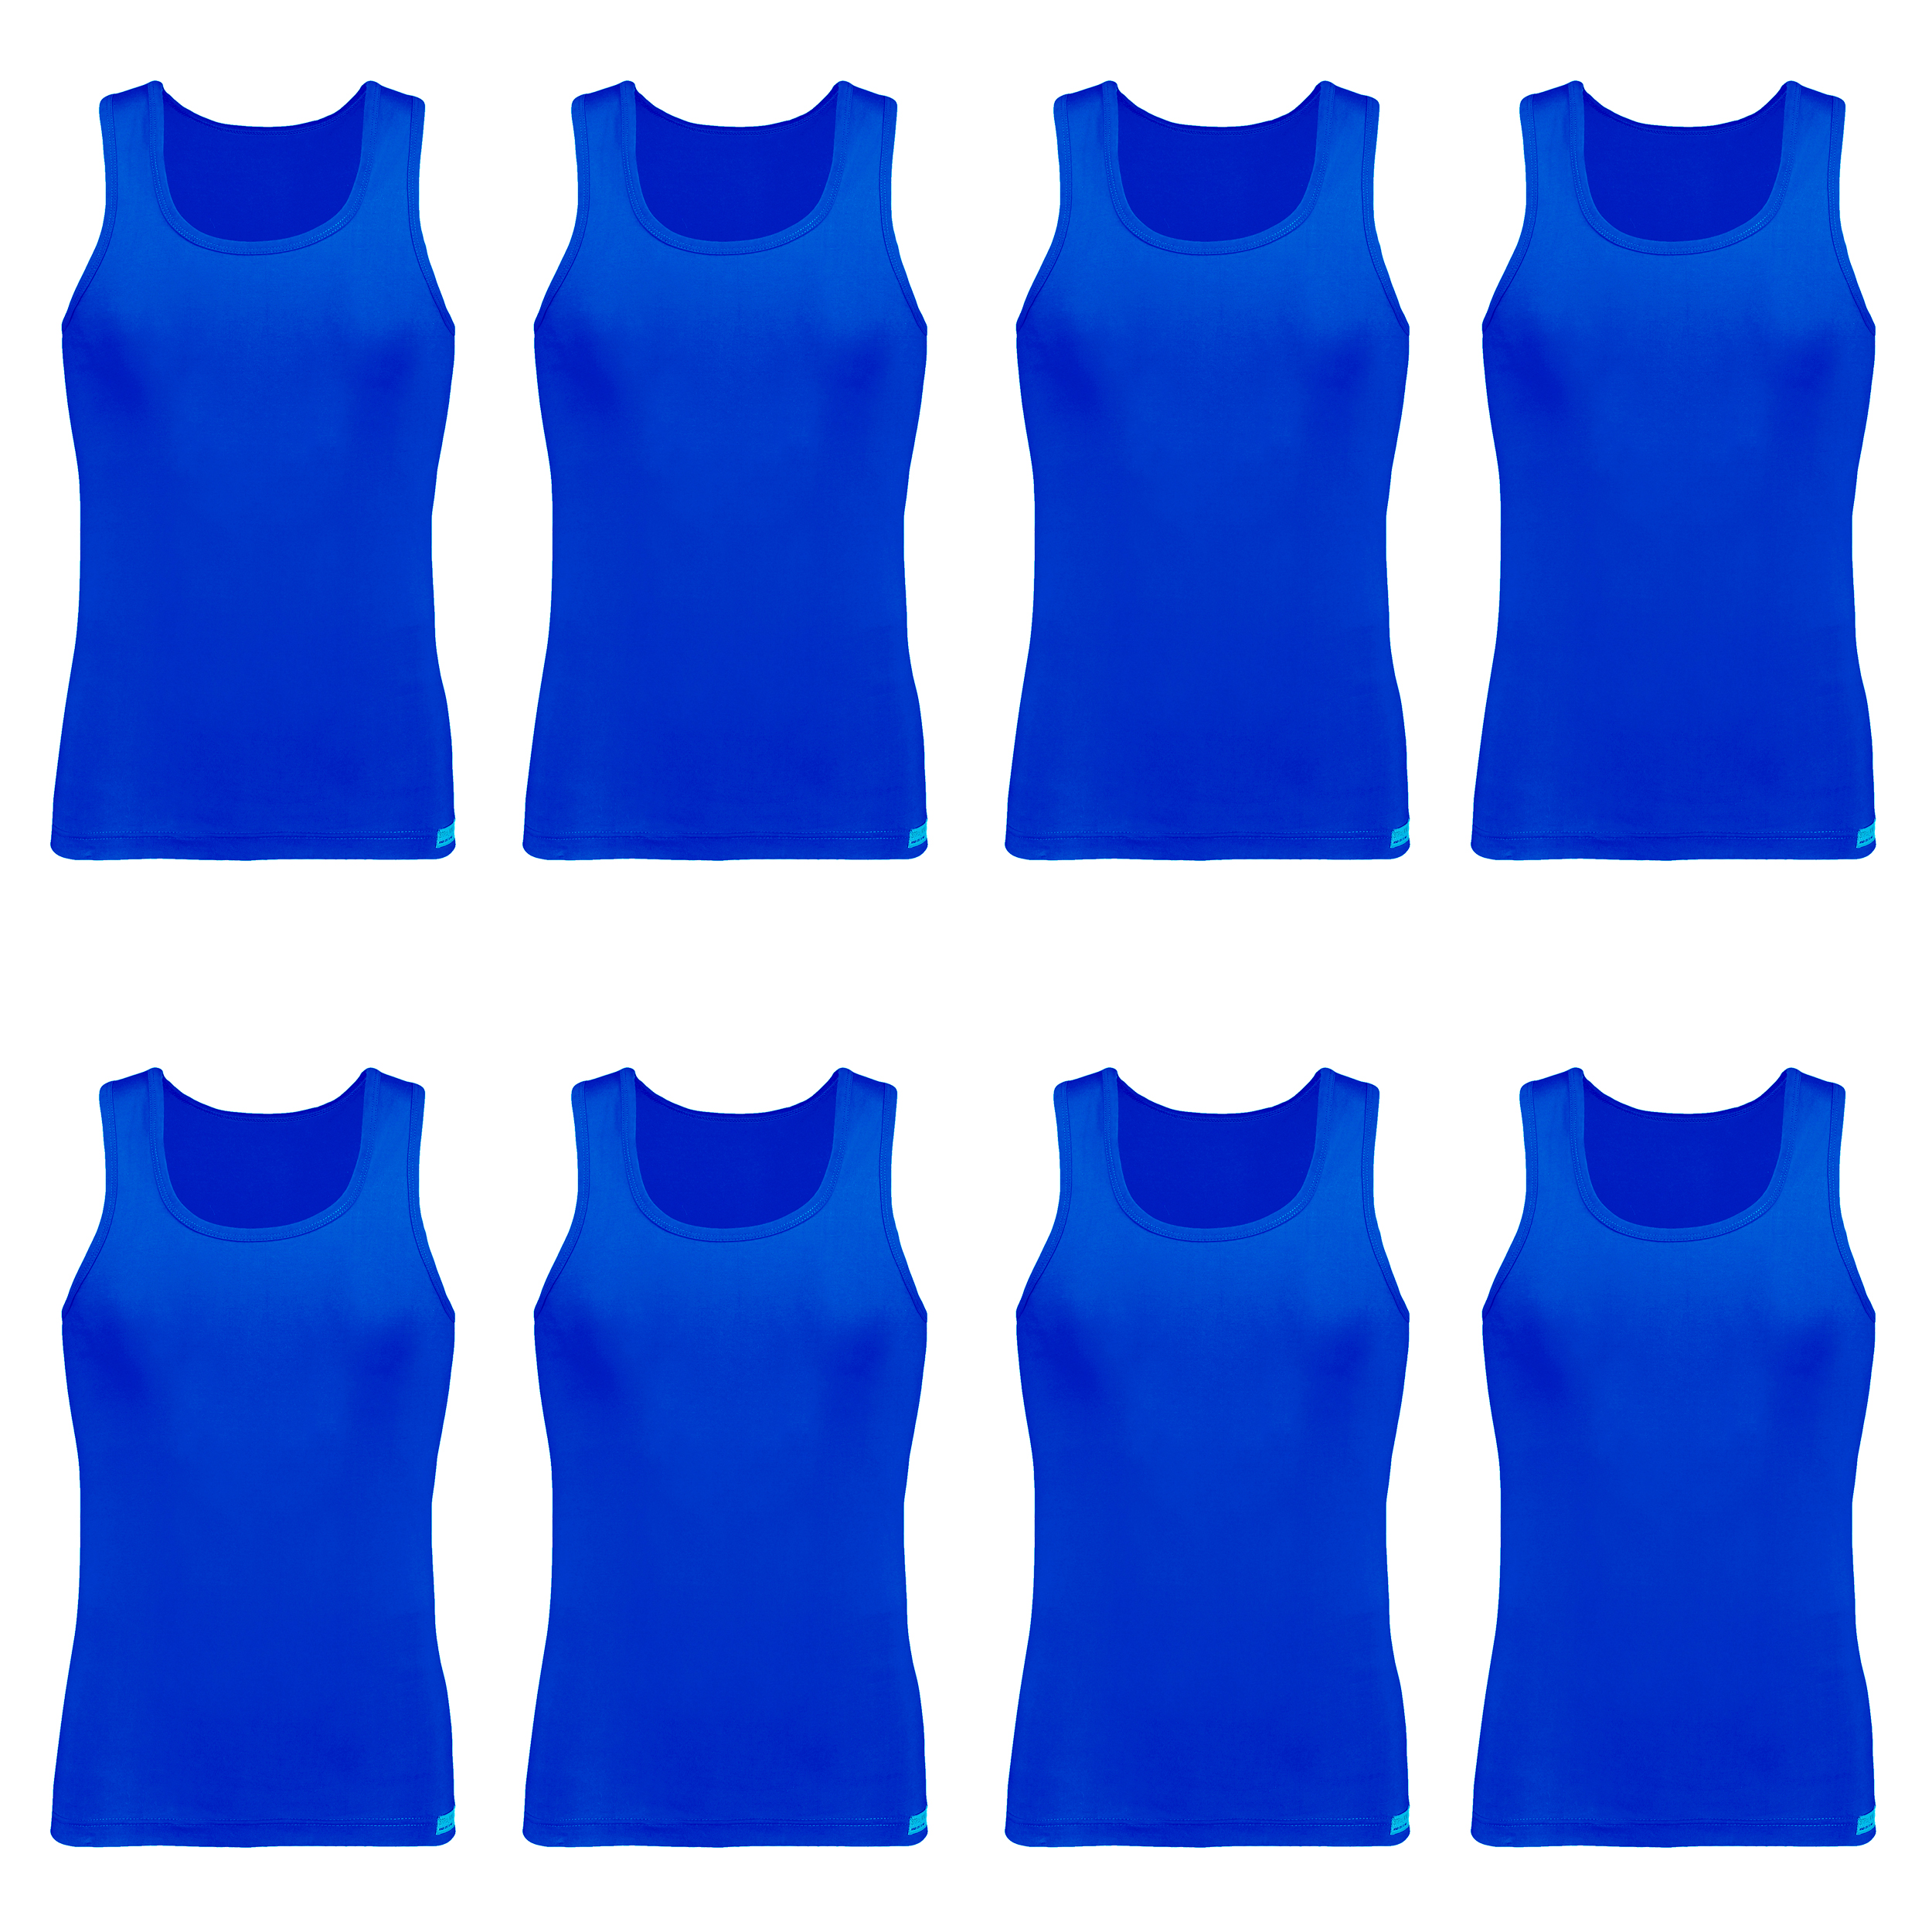 زیرپوش رکابی مردانه برهان تن پوش مدل 14-01 رنگ آبی بسته 8 عددی -  - 1